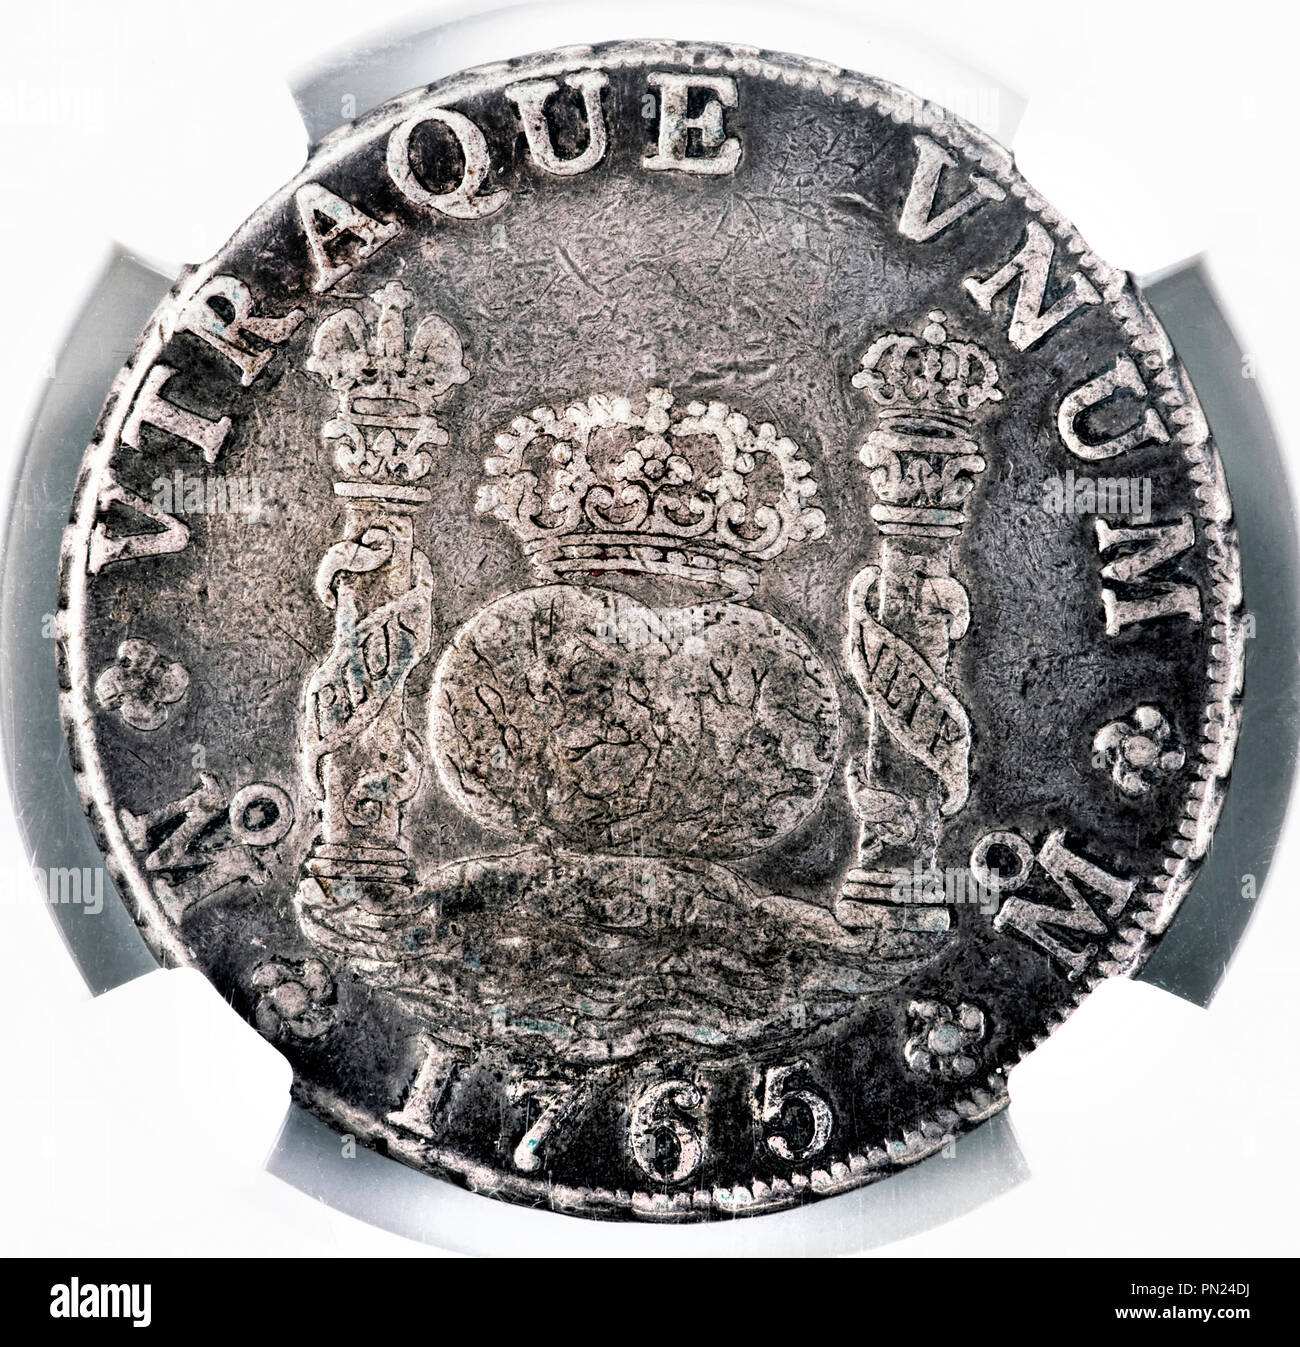 Silver Dollar Espagnol datée du 1765 que l'on appelle parfois des pièce de huit. Utilisé par les pirates comme l'argent de l'argent. Banque D'Images